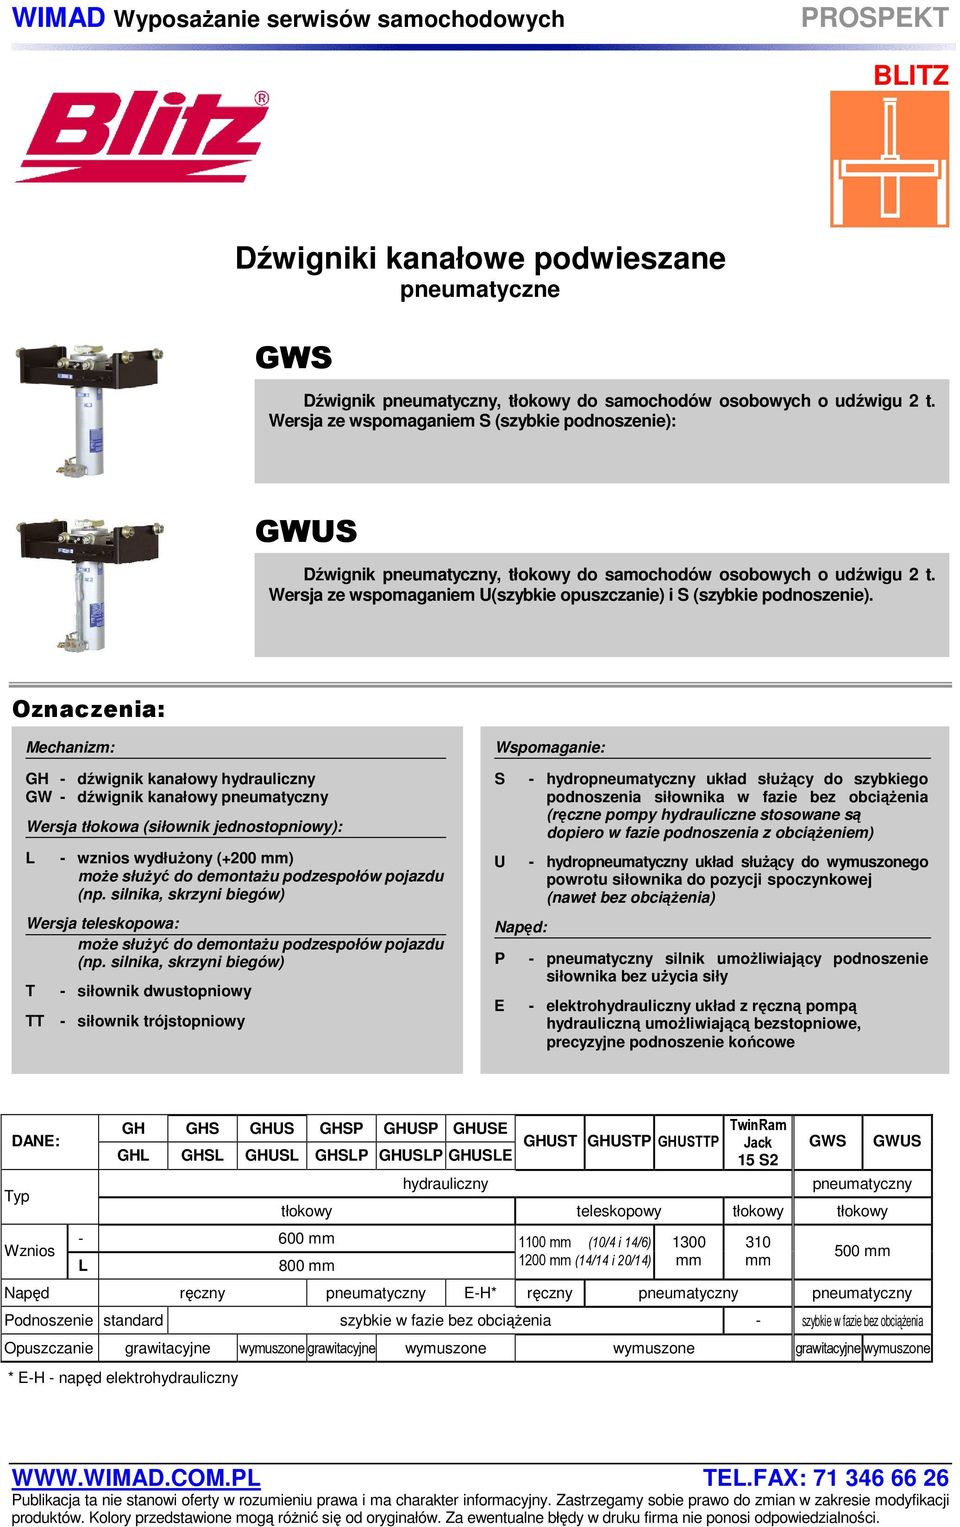 Oznaczenia: Mechanizm: GH - dźwignik kanałowy hydrauliczny GW - dźwignik kanałowy pneumatyczny Wersja tłokowa (siłownik jednostopniowy): L - wznios wydłużony (+200 mm) może służyć do demontażu